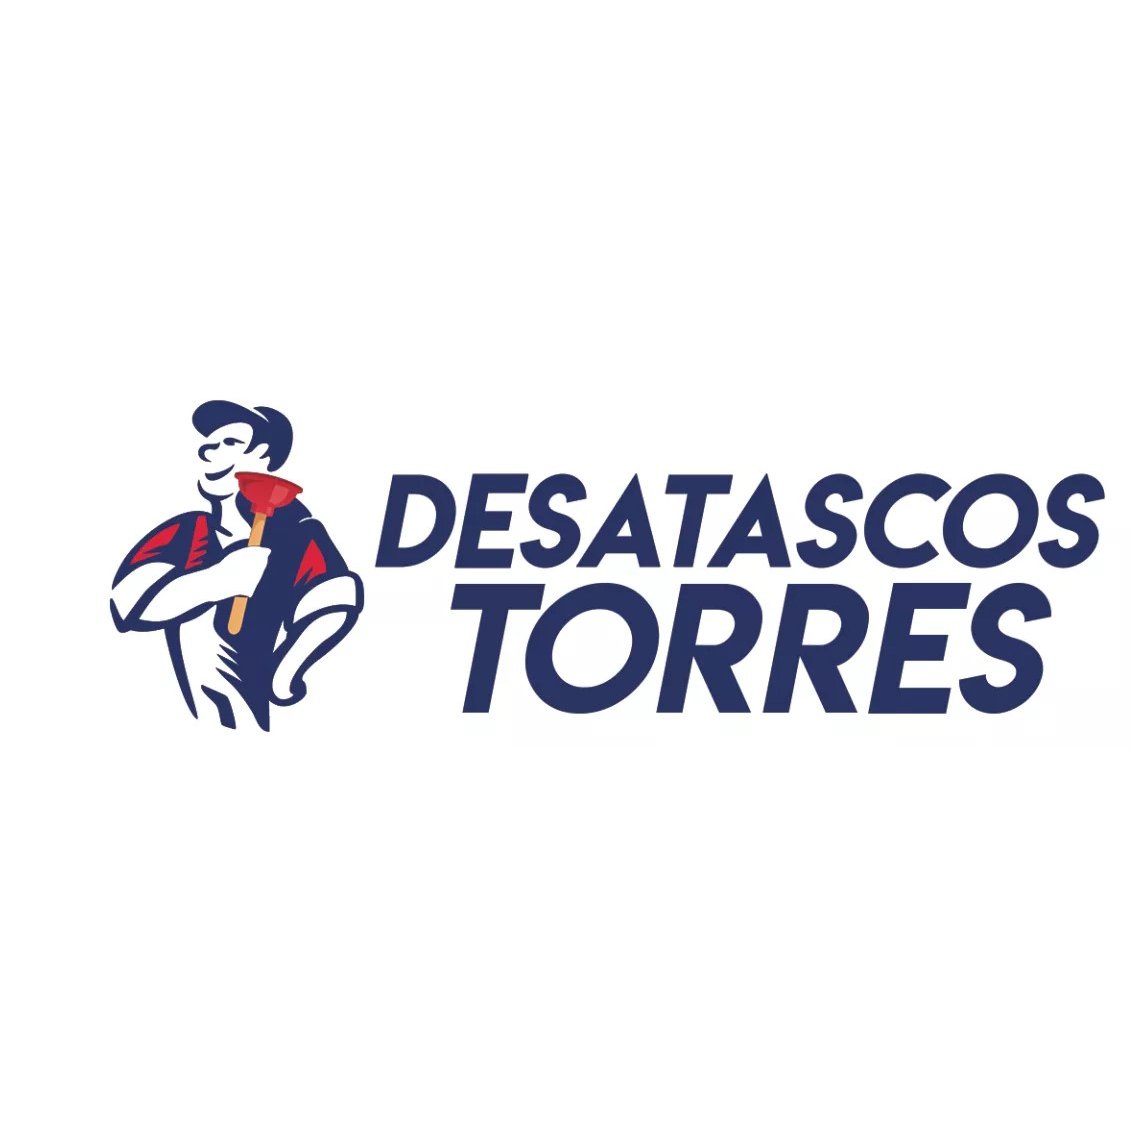 Desatascos Torres Murcia Logo